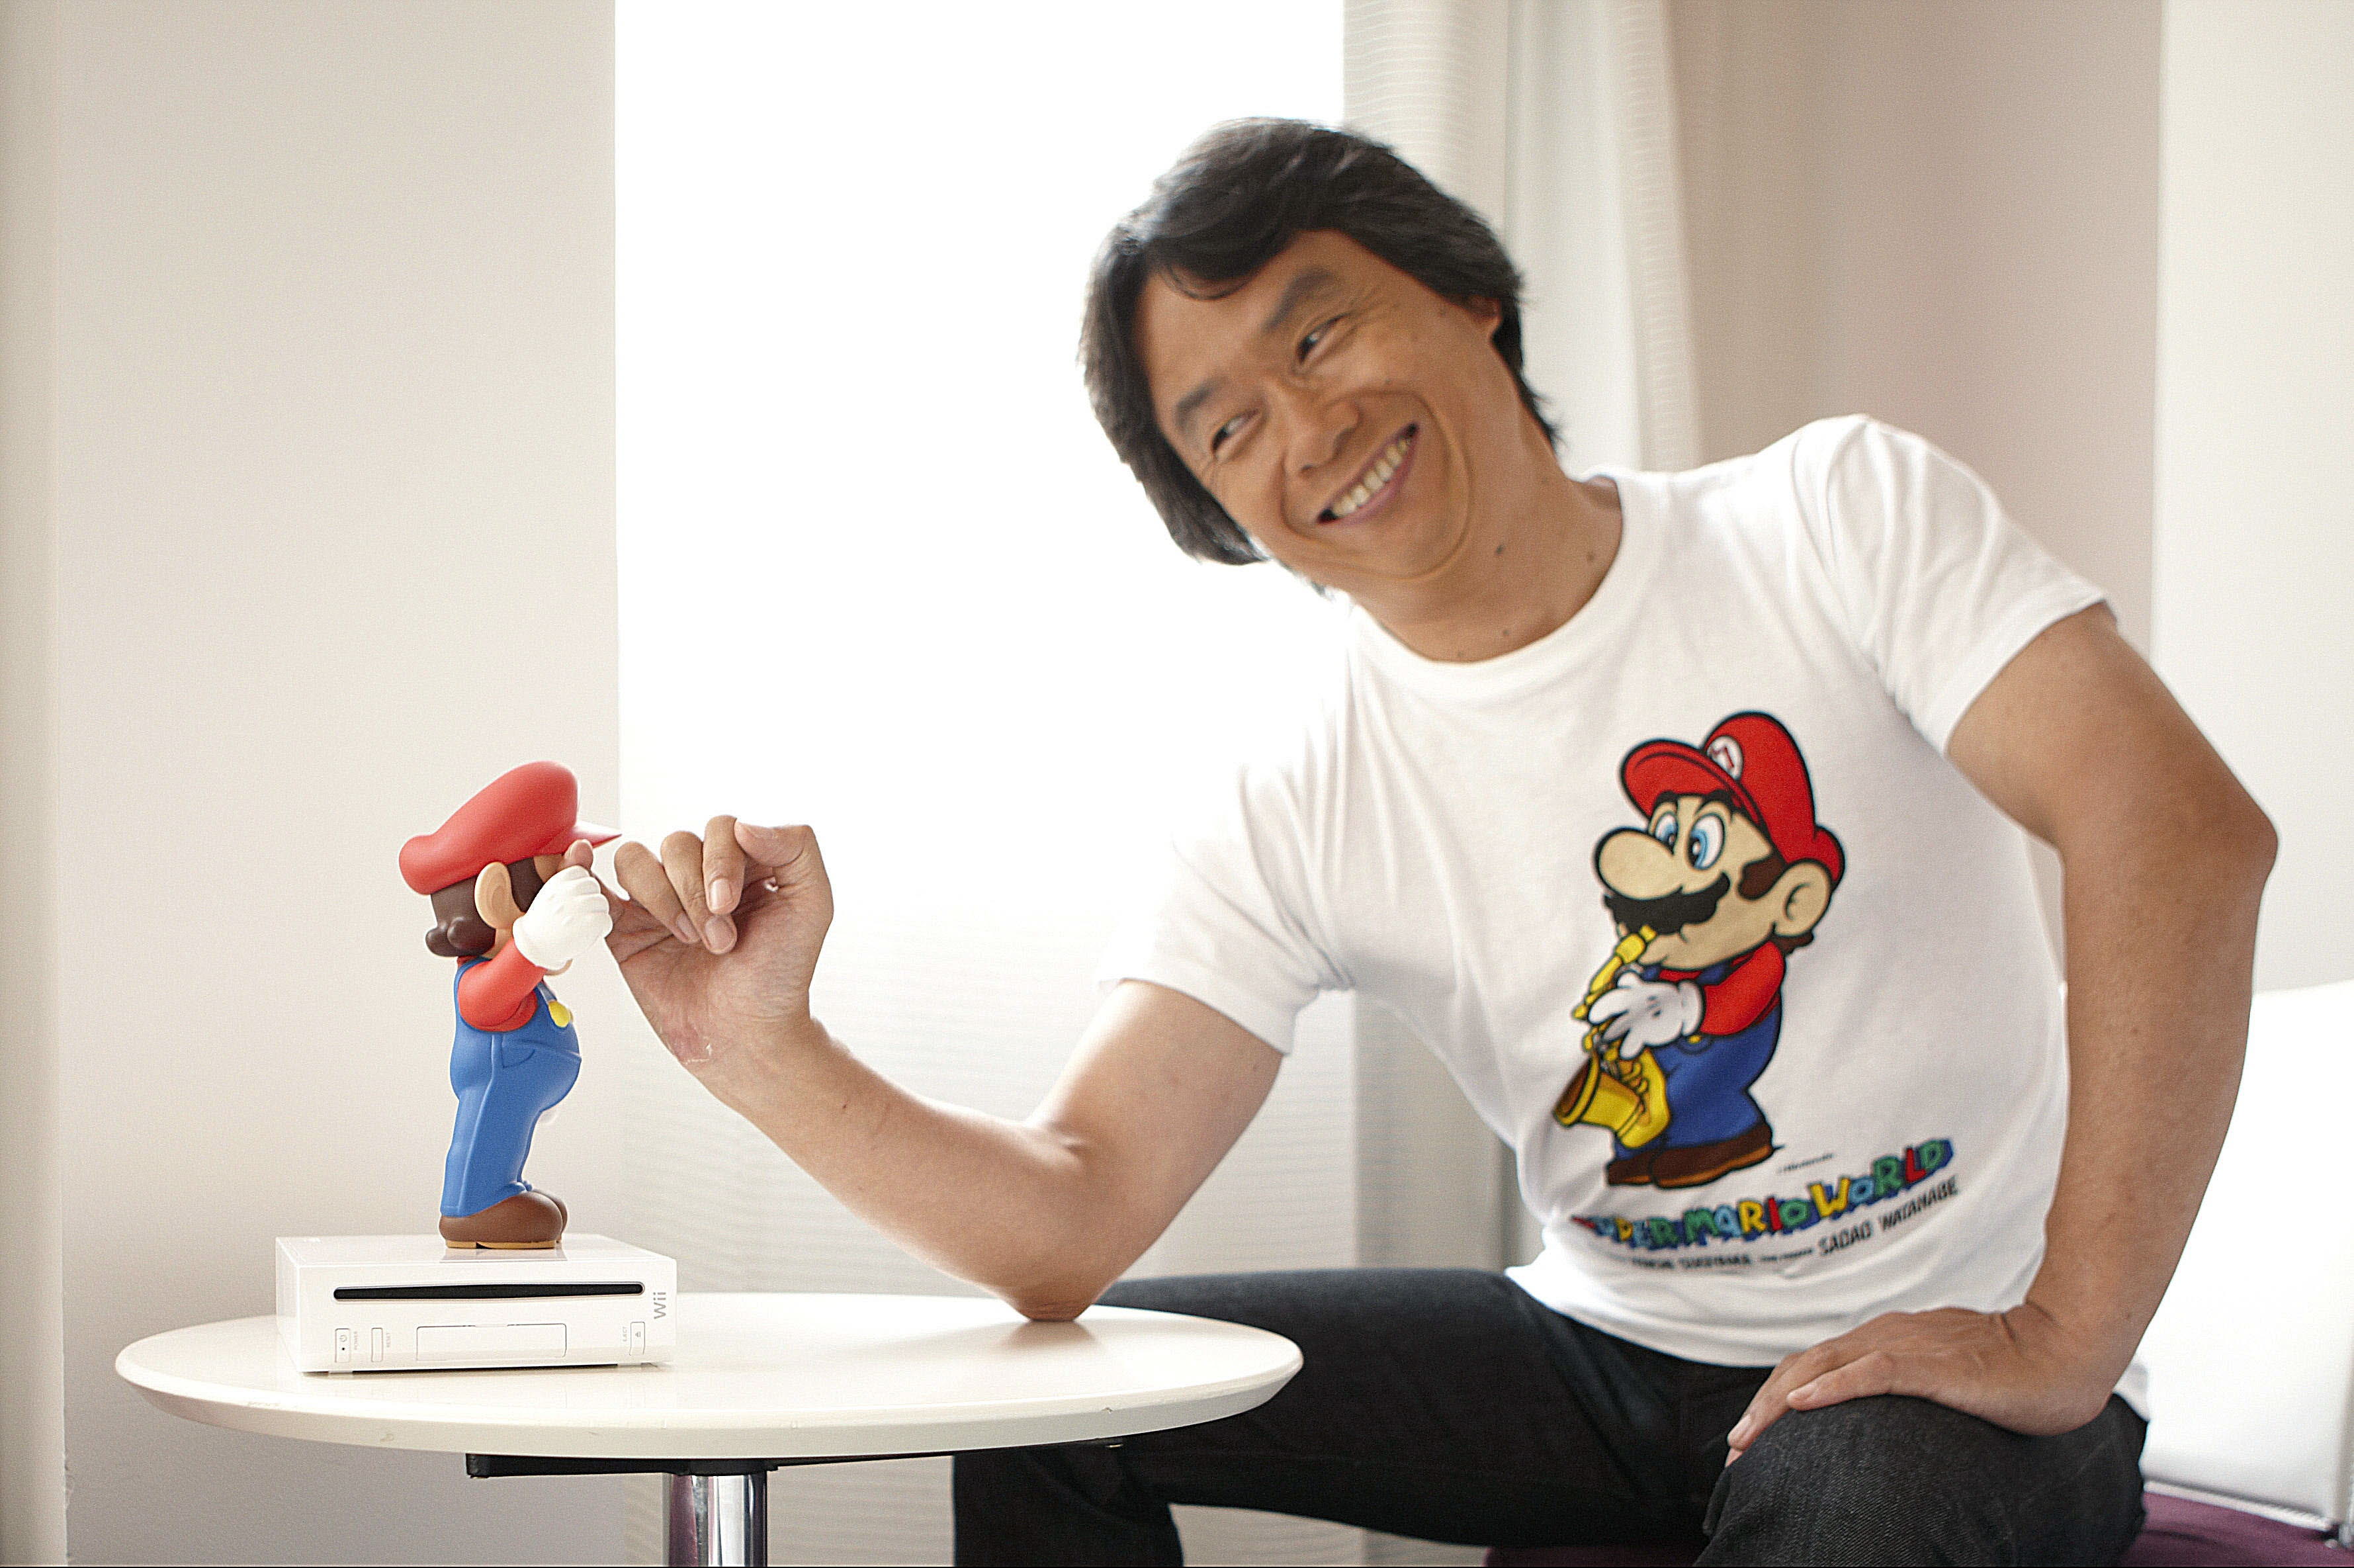 Descargar fondos de escritorio de Shigeru Miyamoto HD